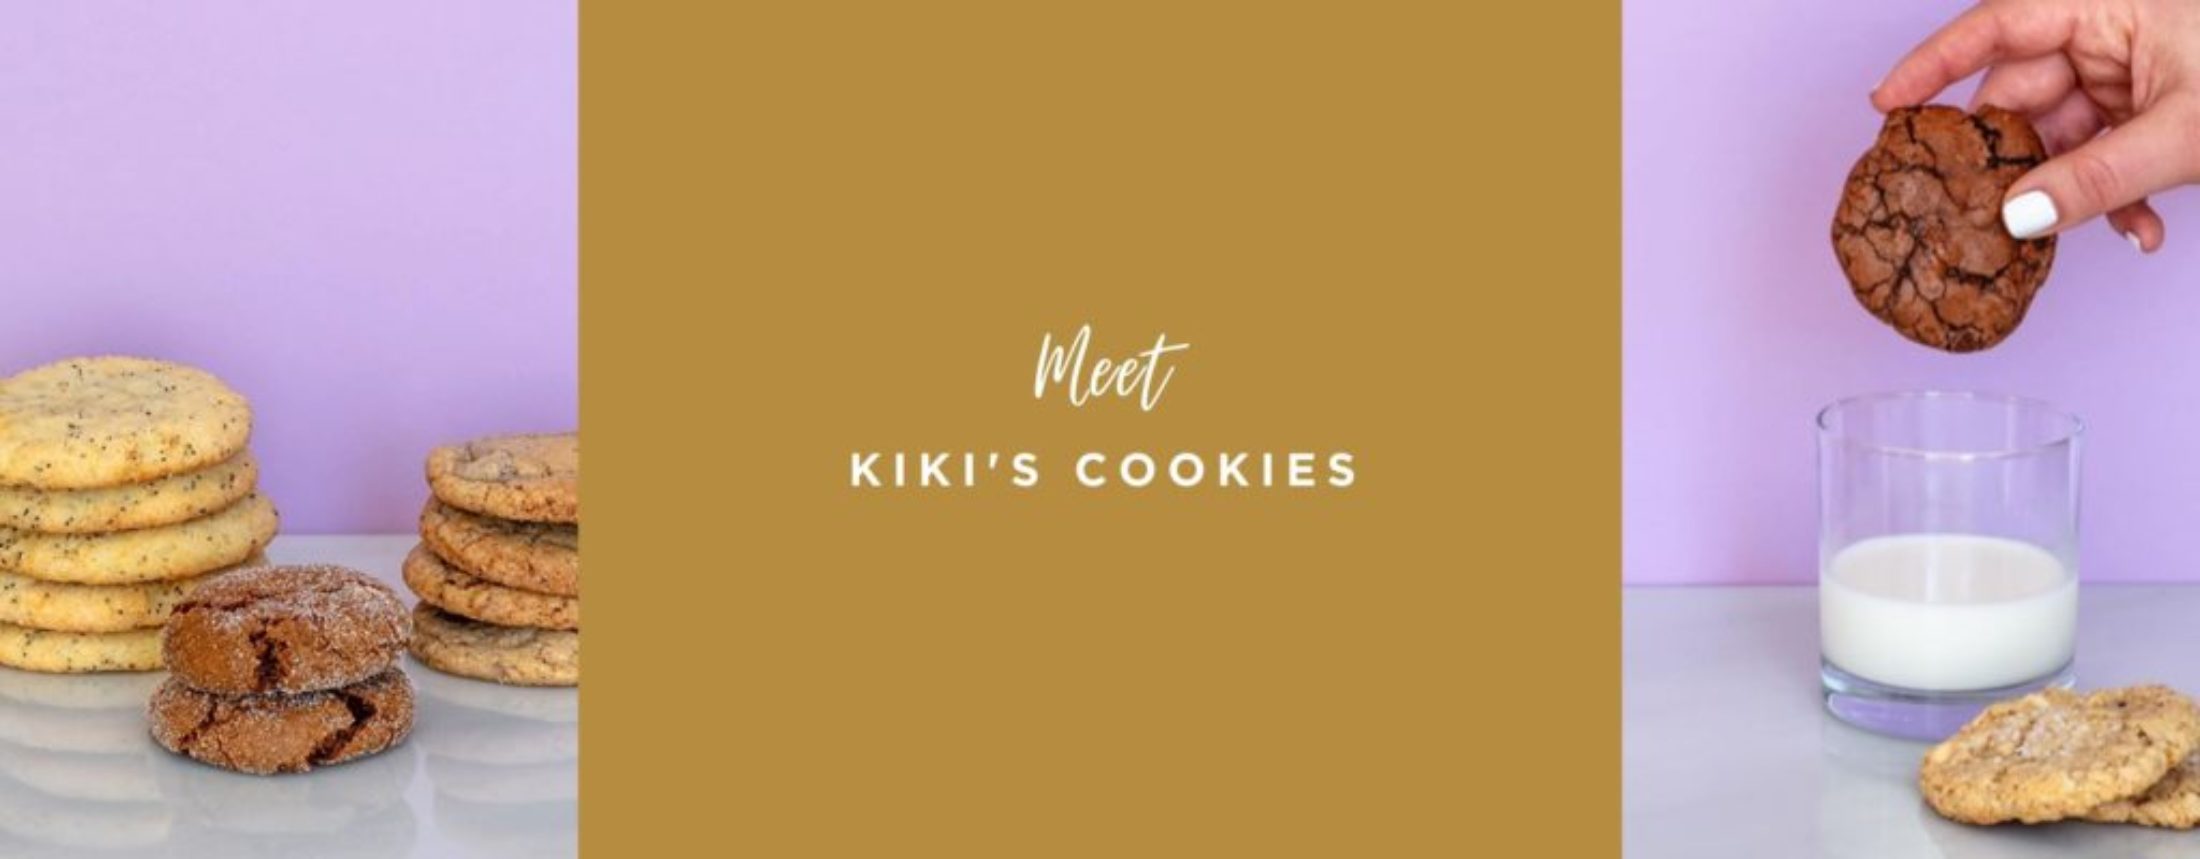 Meet Kikis Cookies - blog